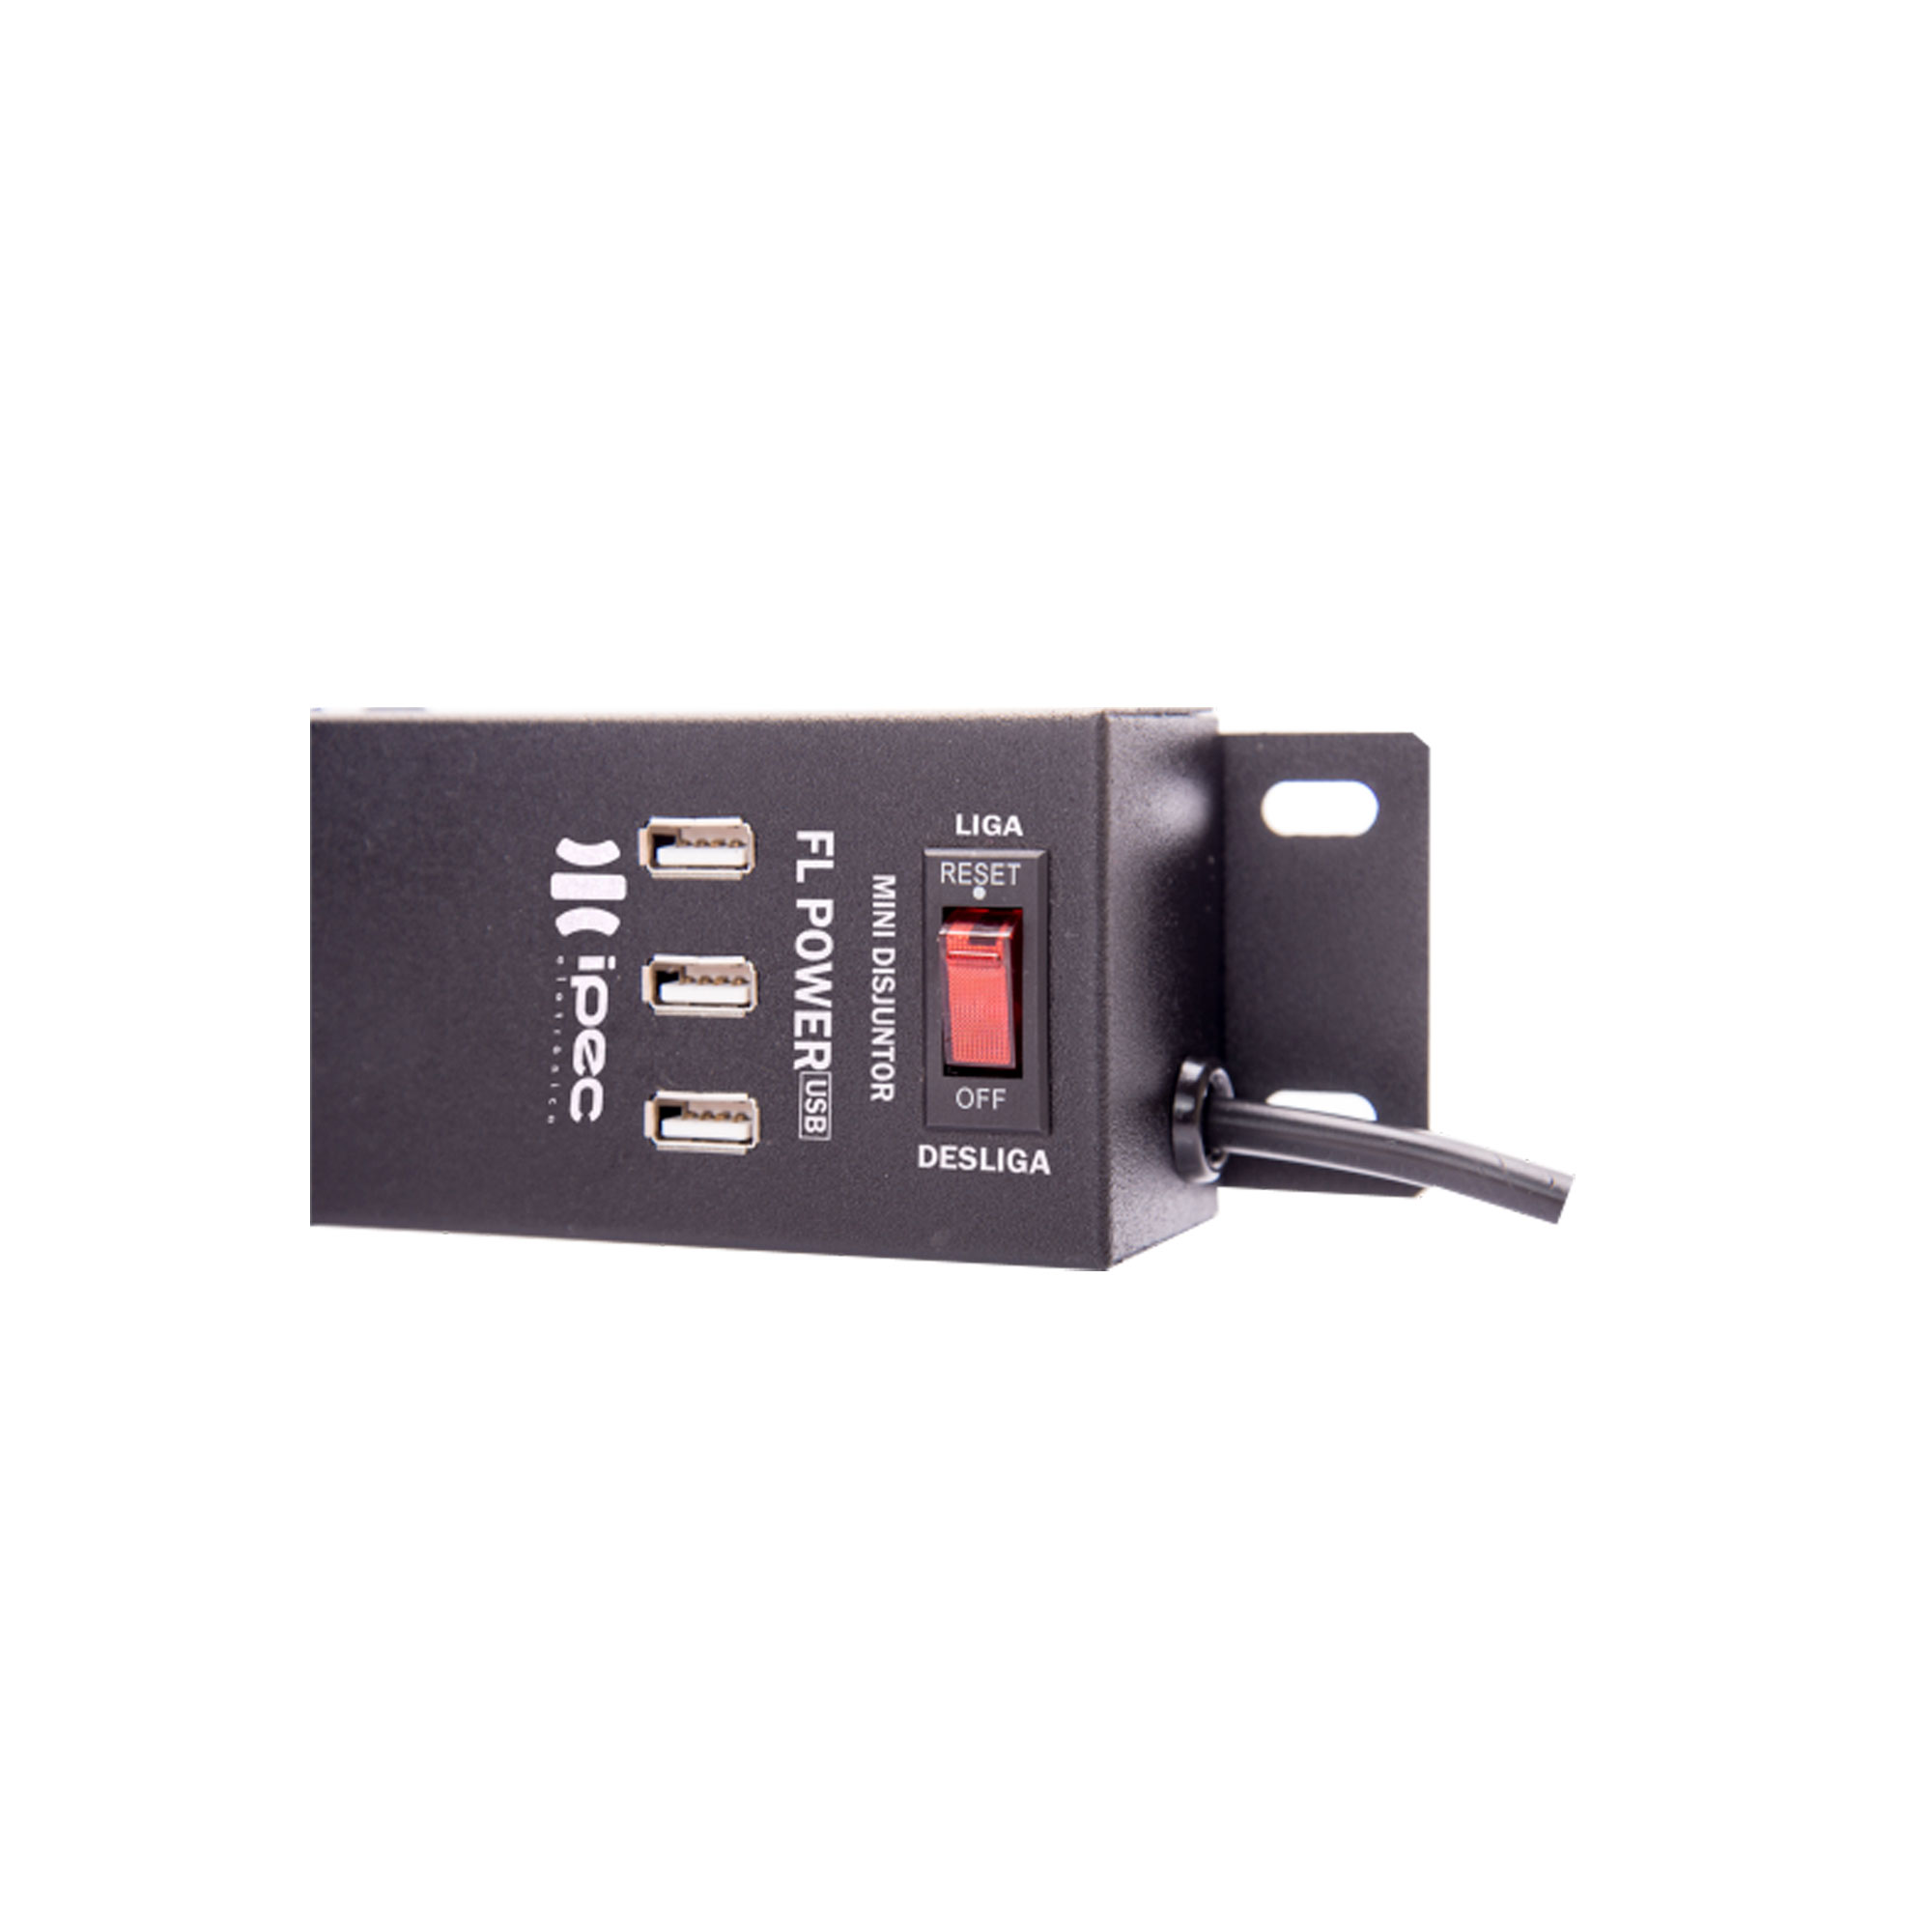 Imagem do FL Power - Filtro de Linha com USB (Preta)